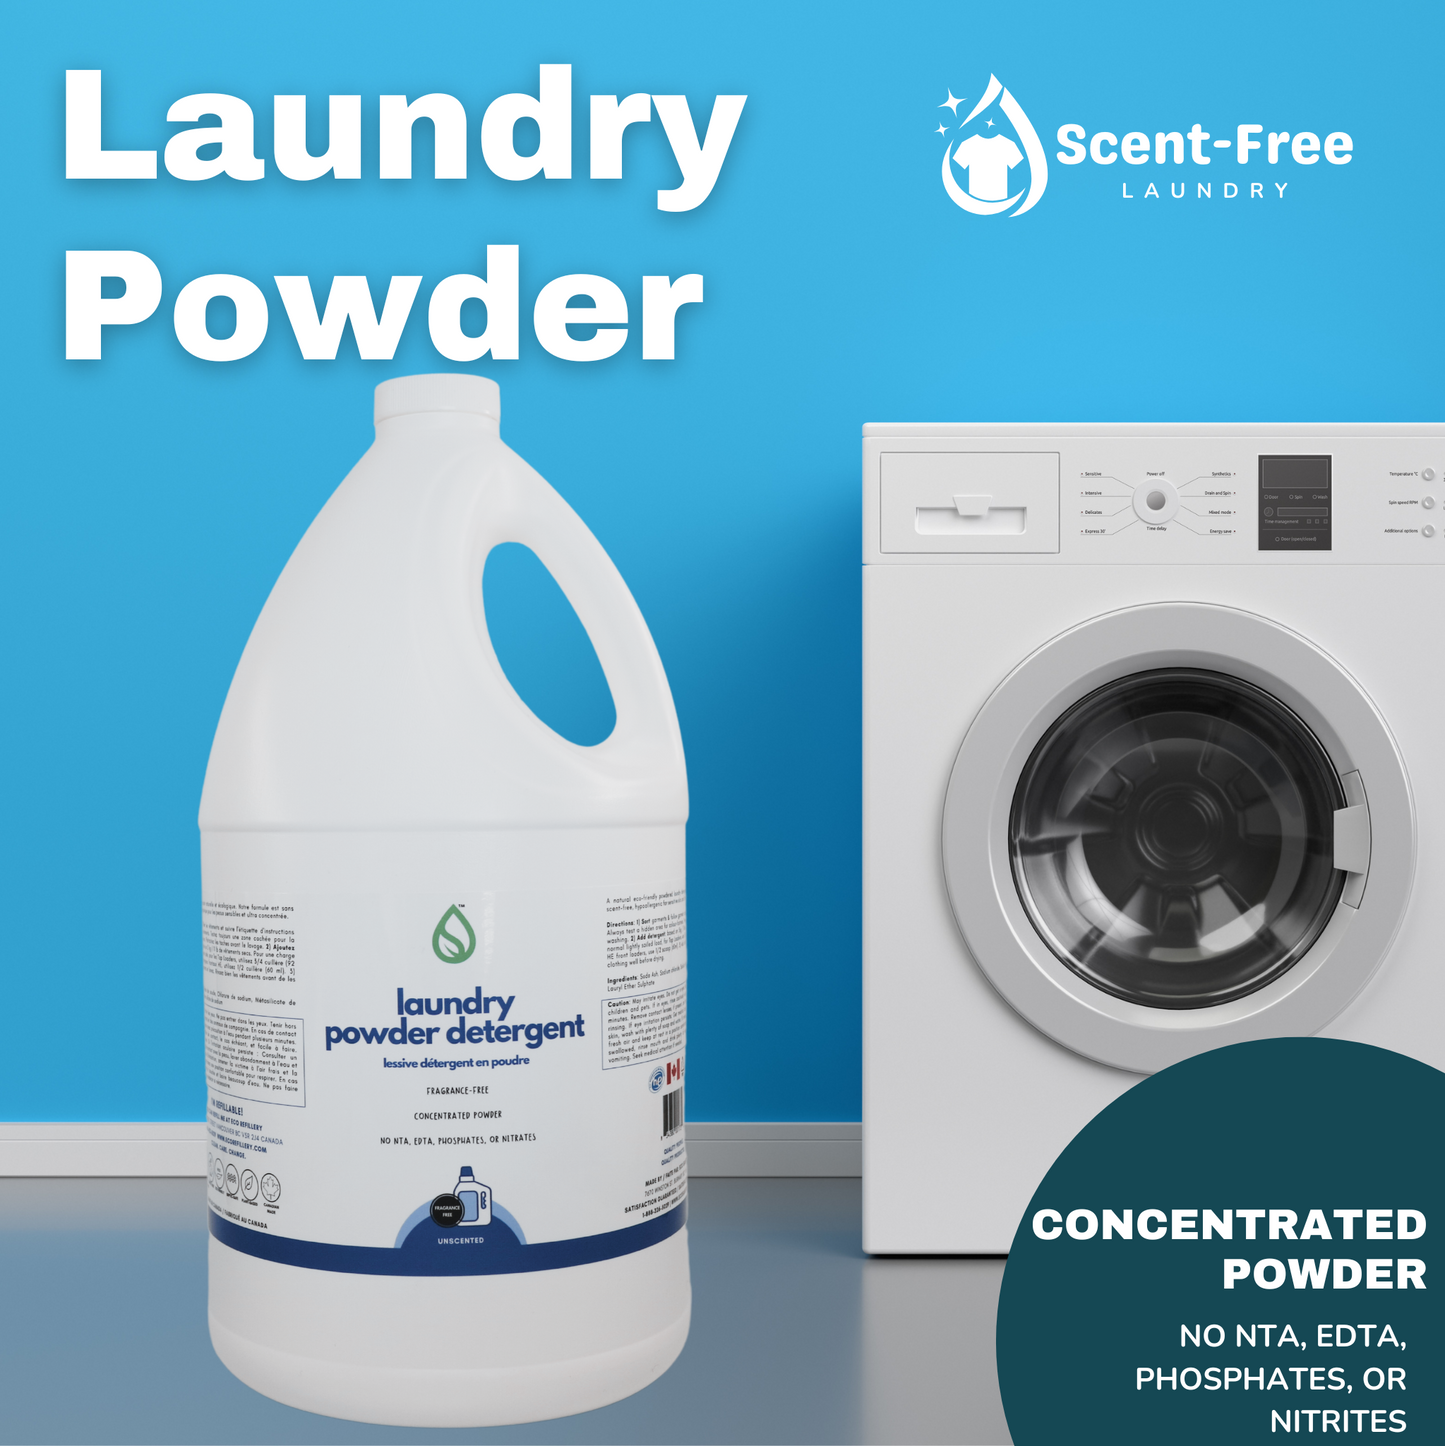 Laundry Powder Detergent (Unscented)